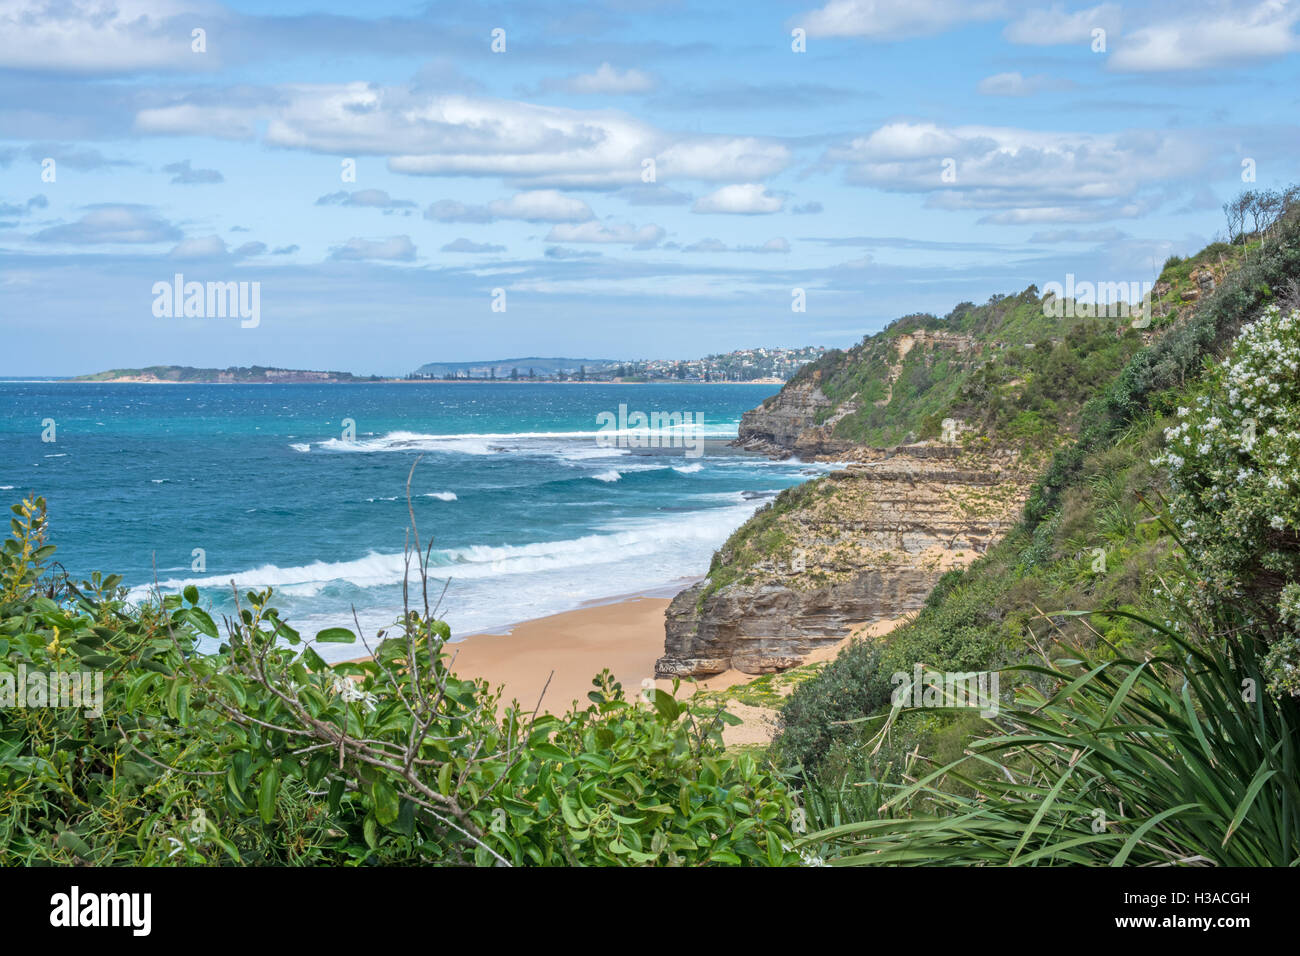 Turimetta Beach. On Sydney's Northern Suburbs Peninsula. Australia. Stock Photo